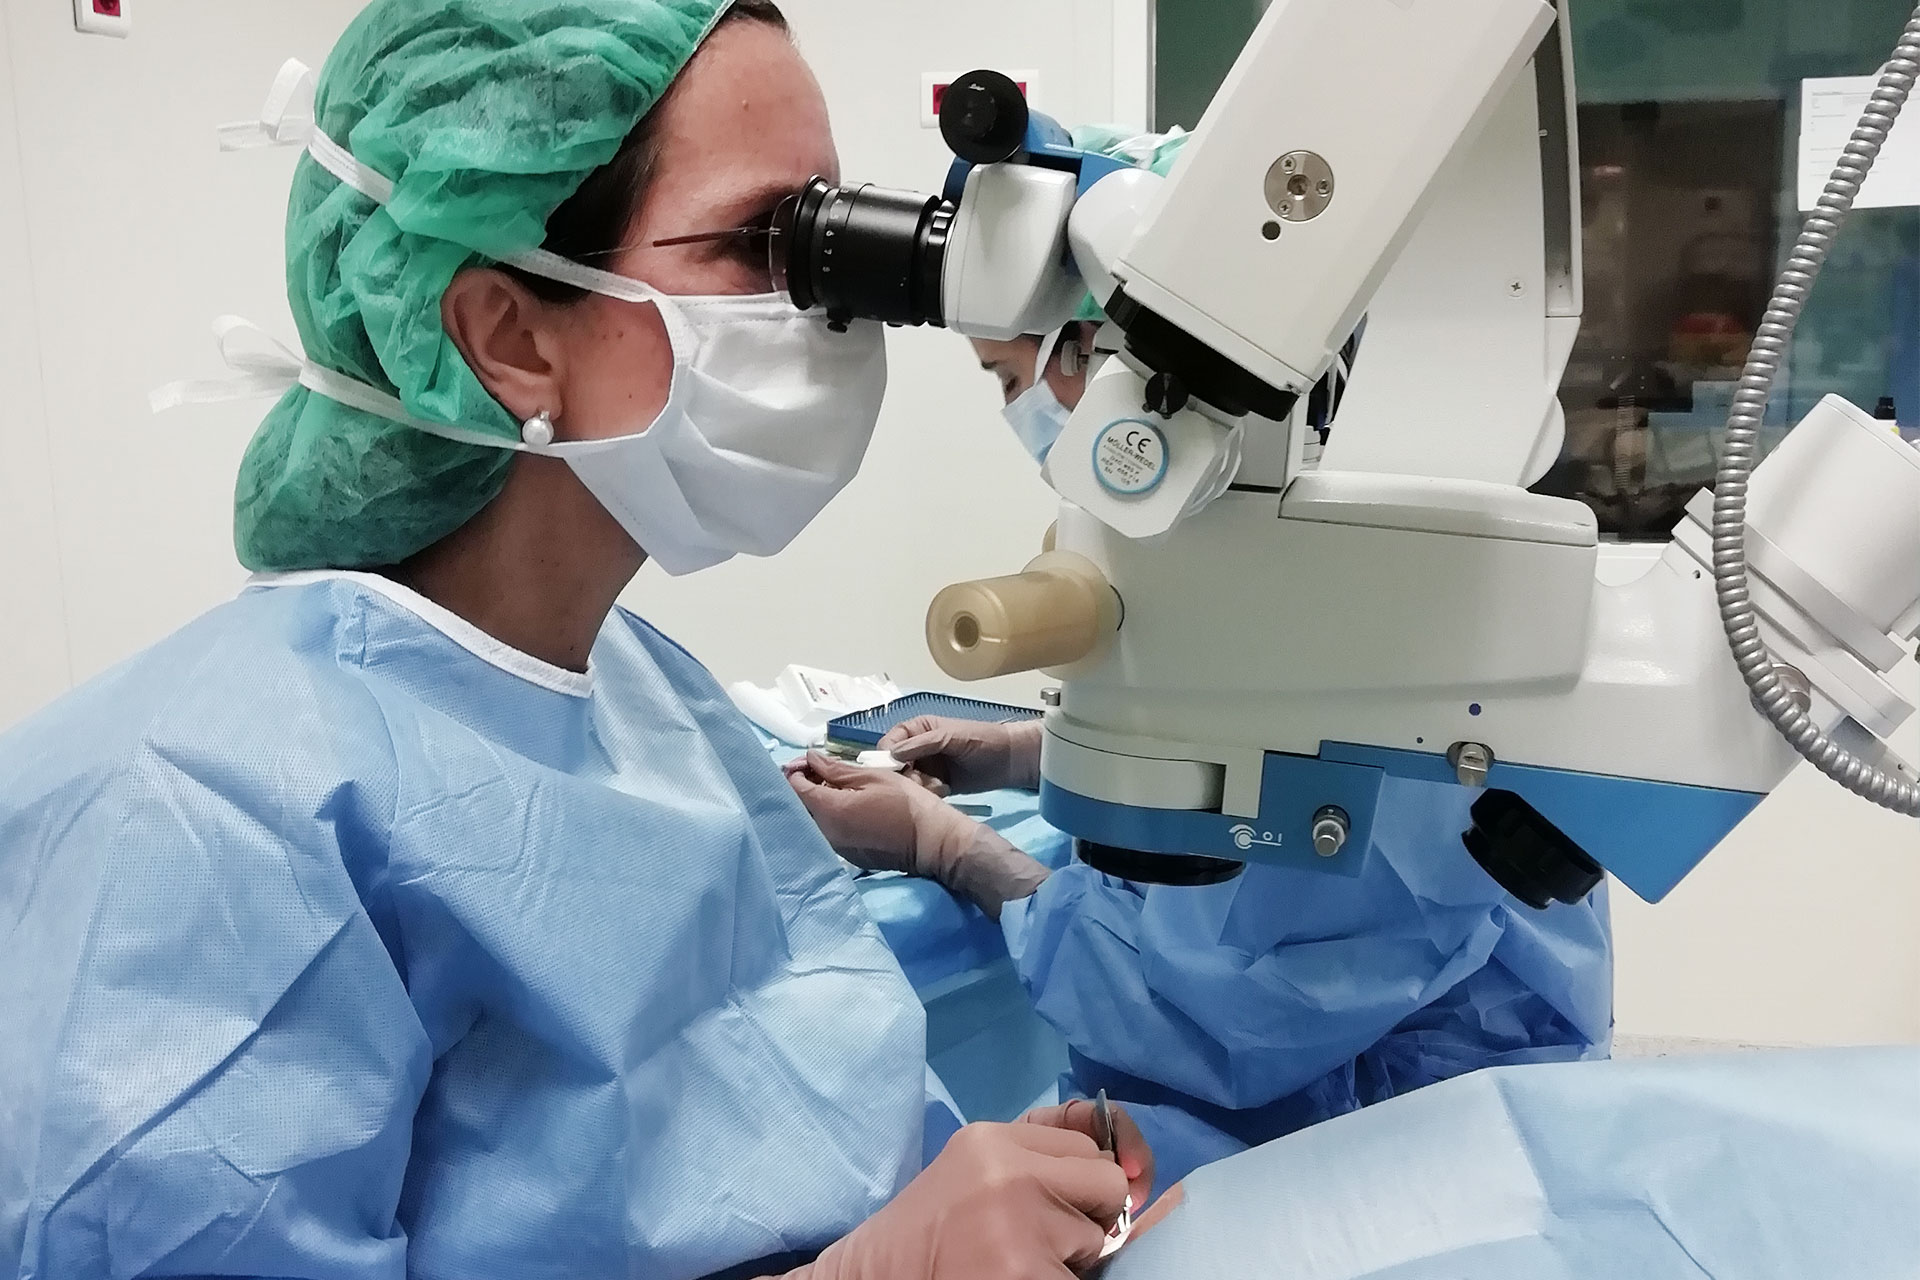 Cirurgia de Glaucoma